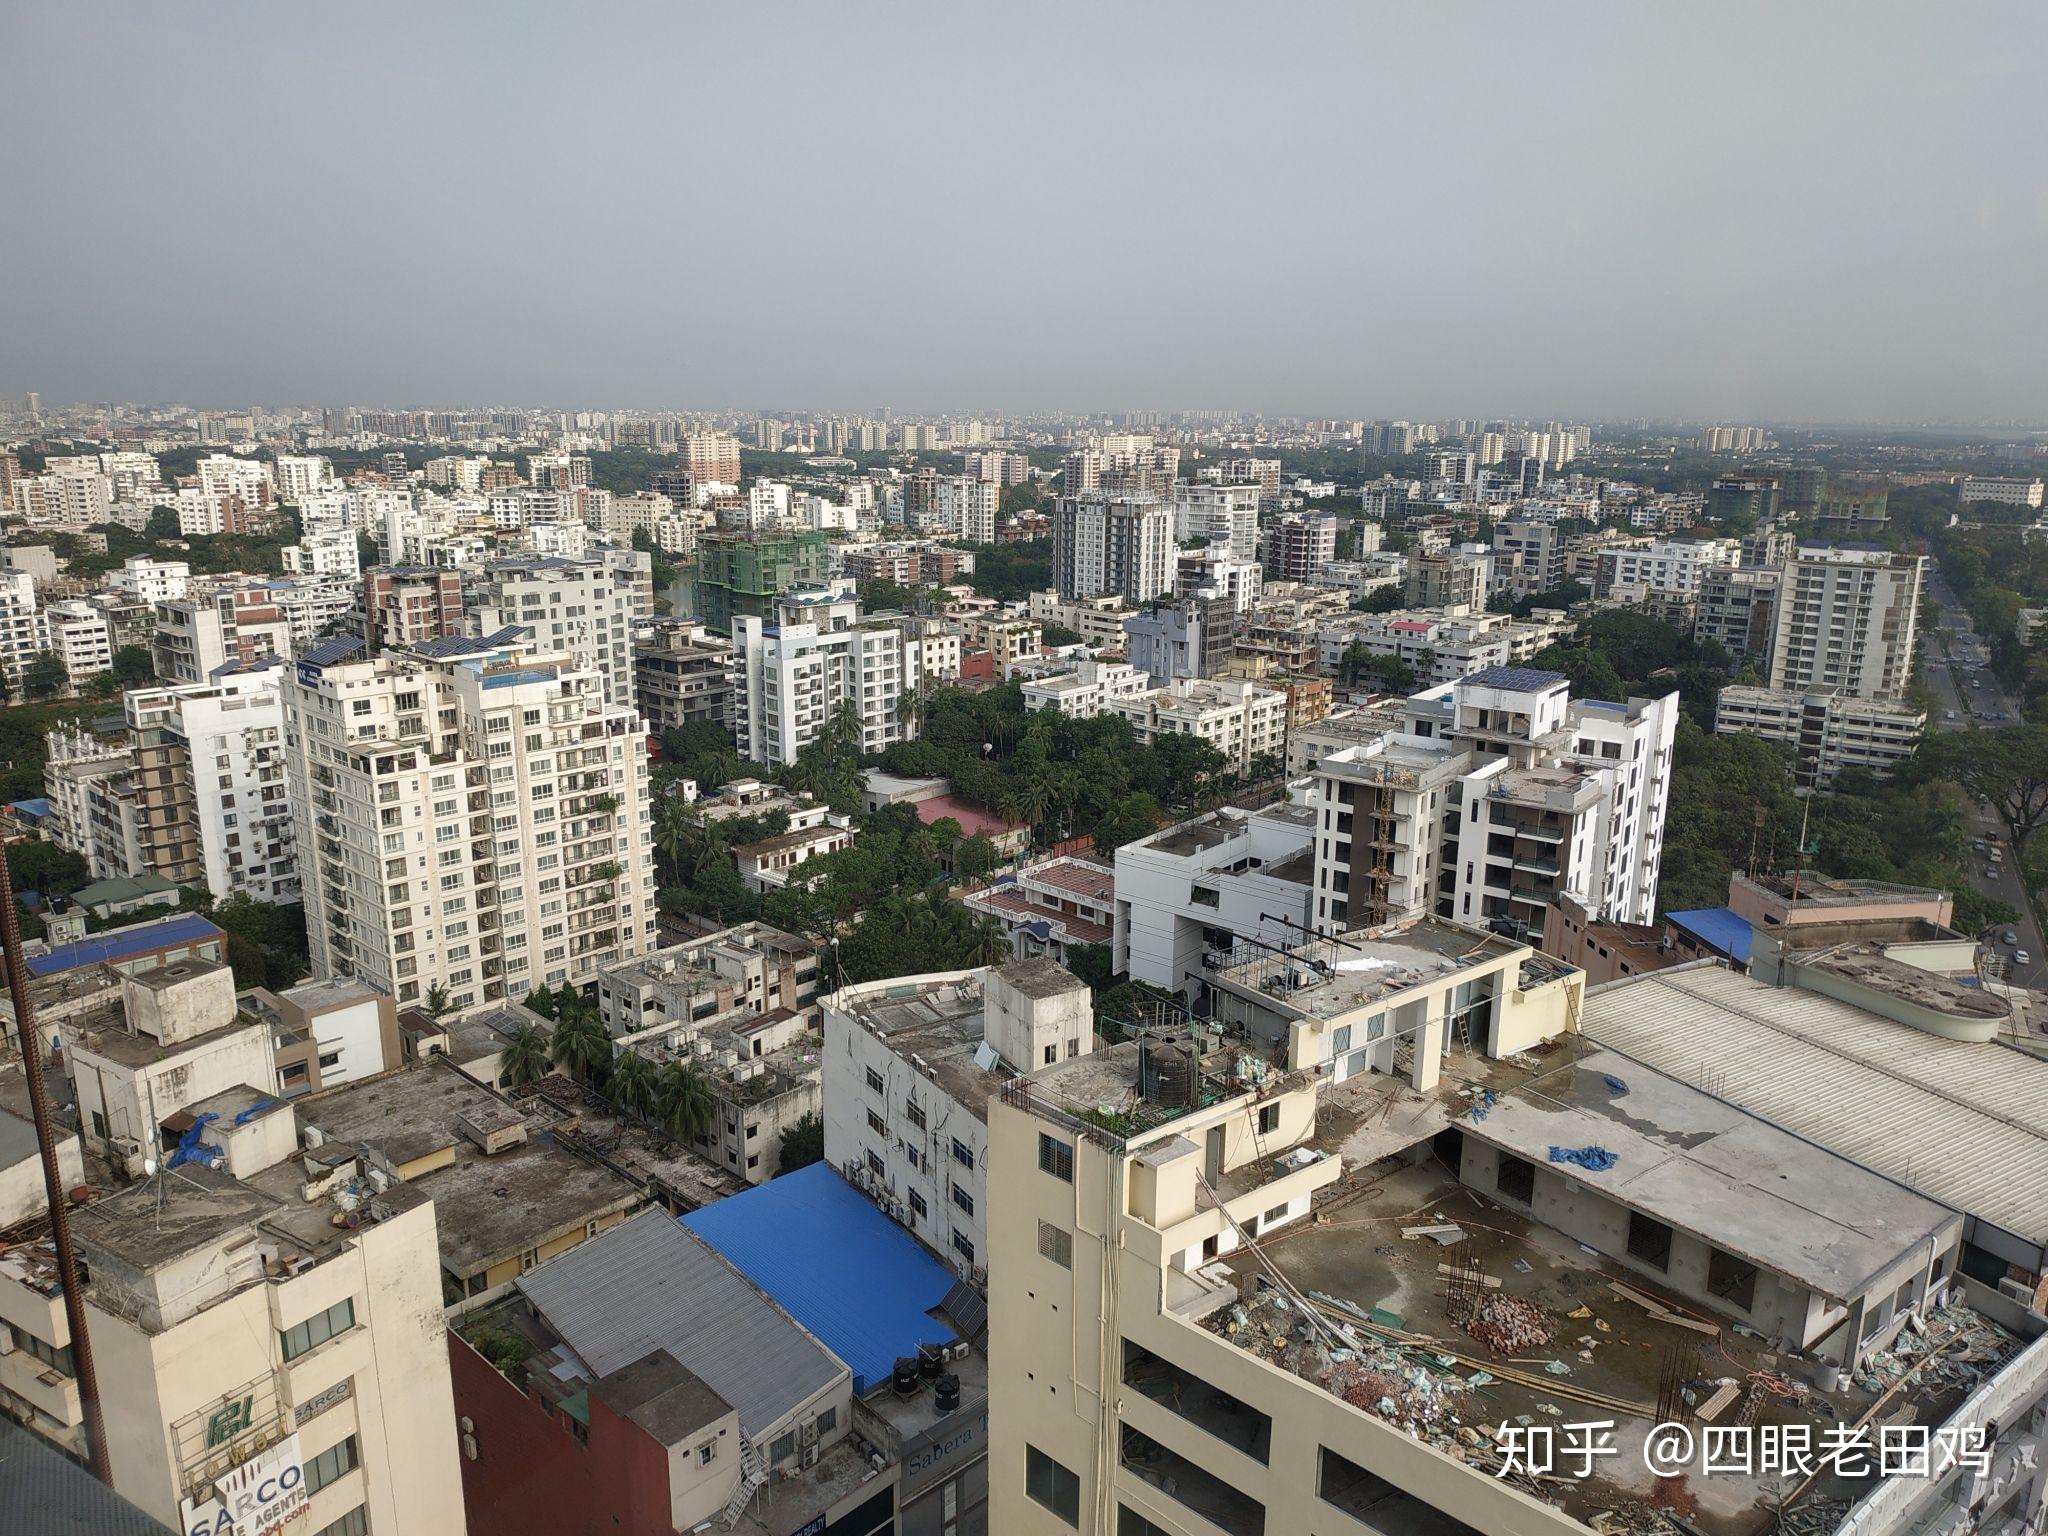 孟加拉国首都达卡城市综合水平相当于中国哪个